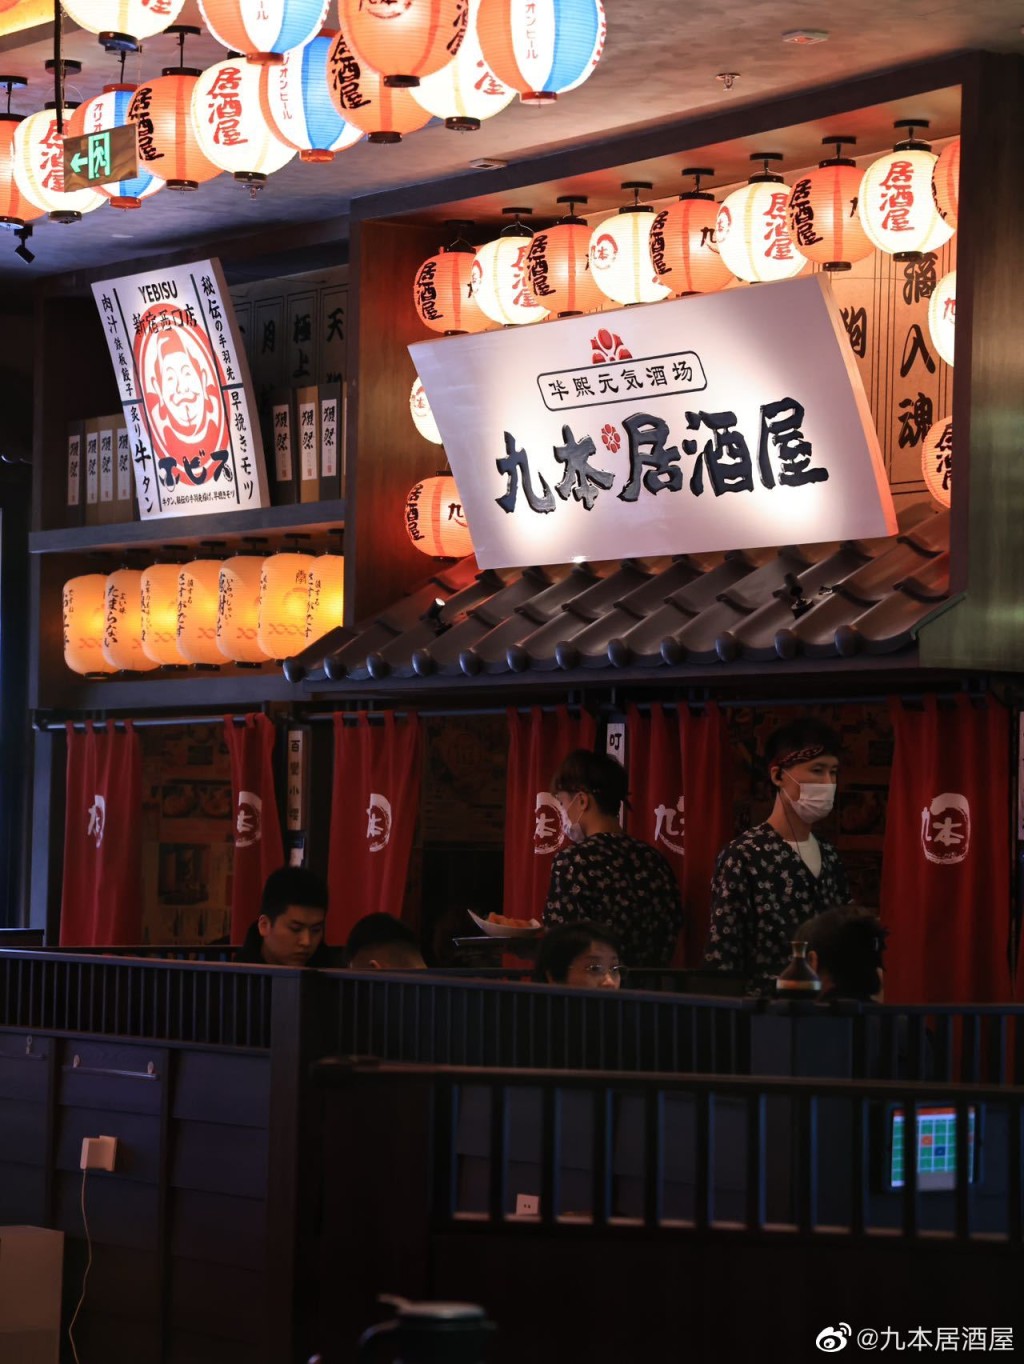 九本居酒屋是北京知名日式料理店。